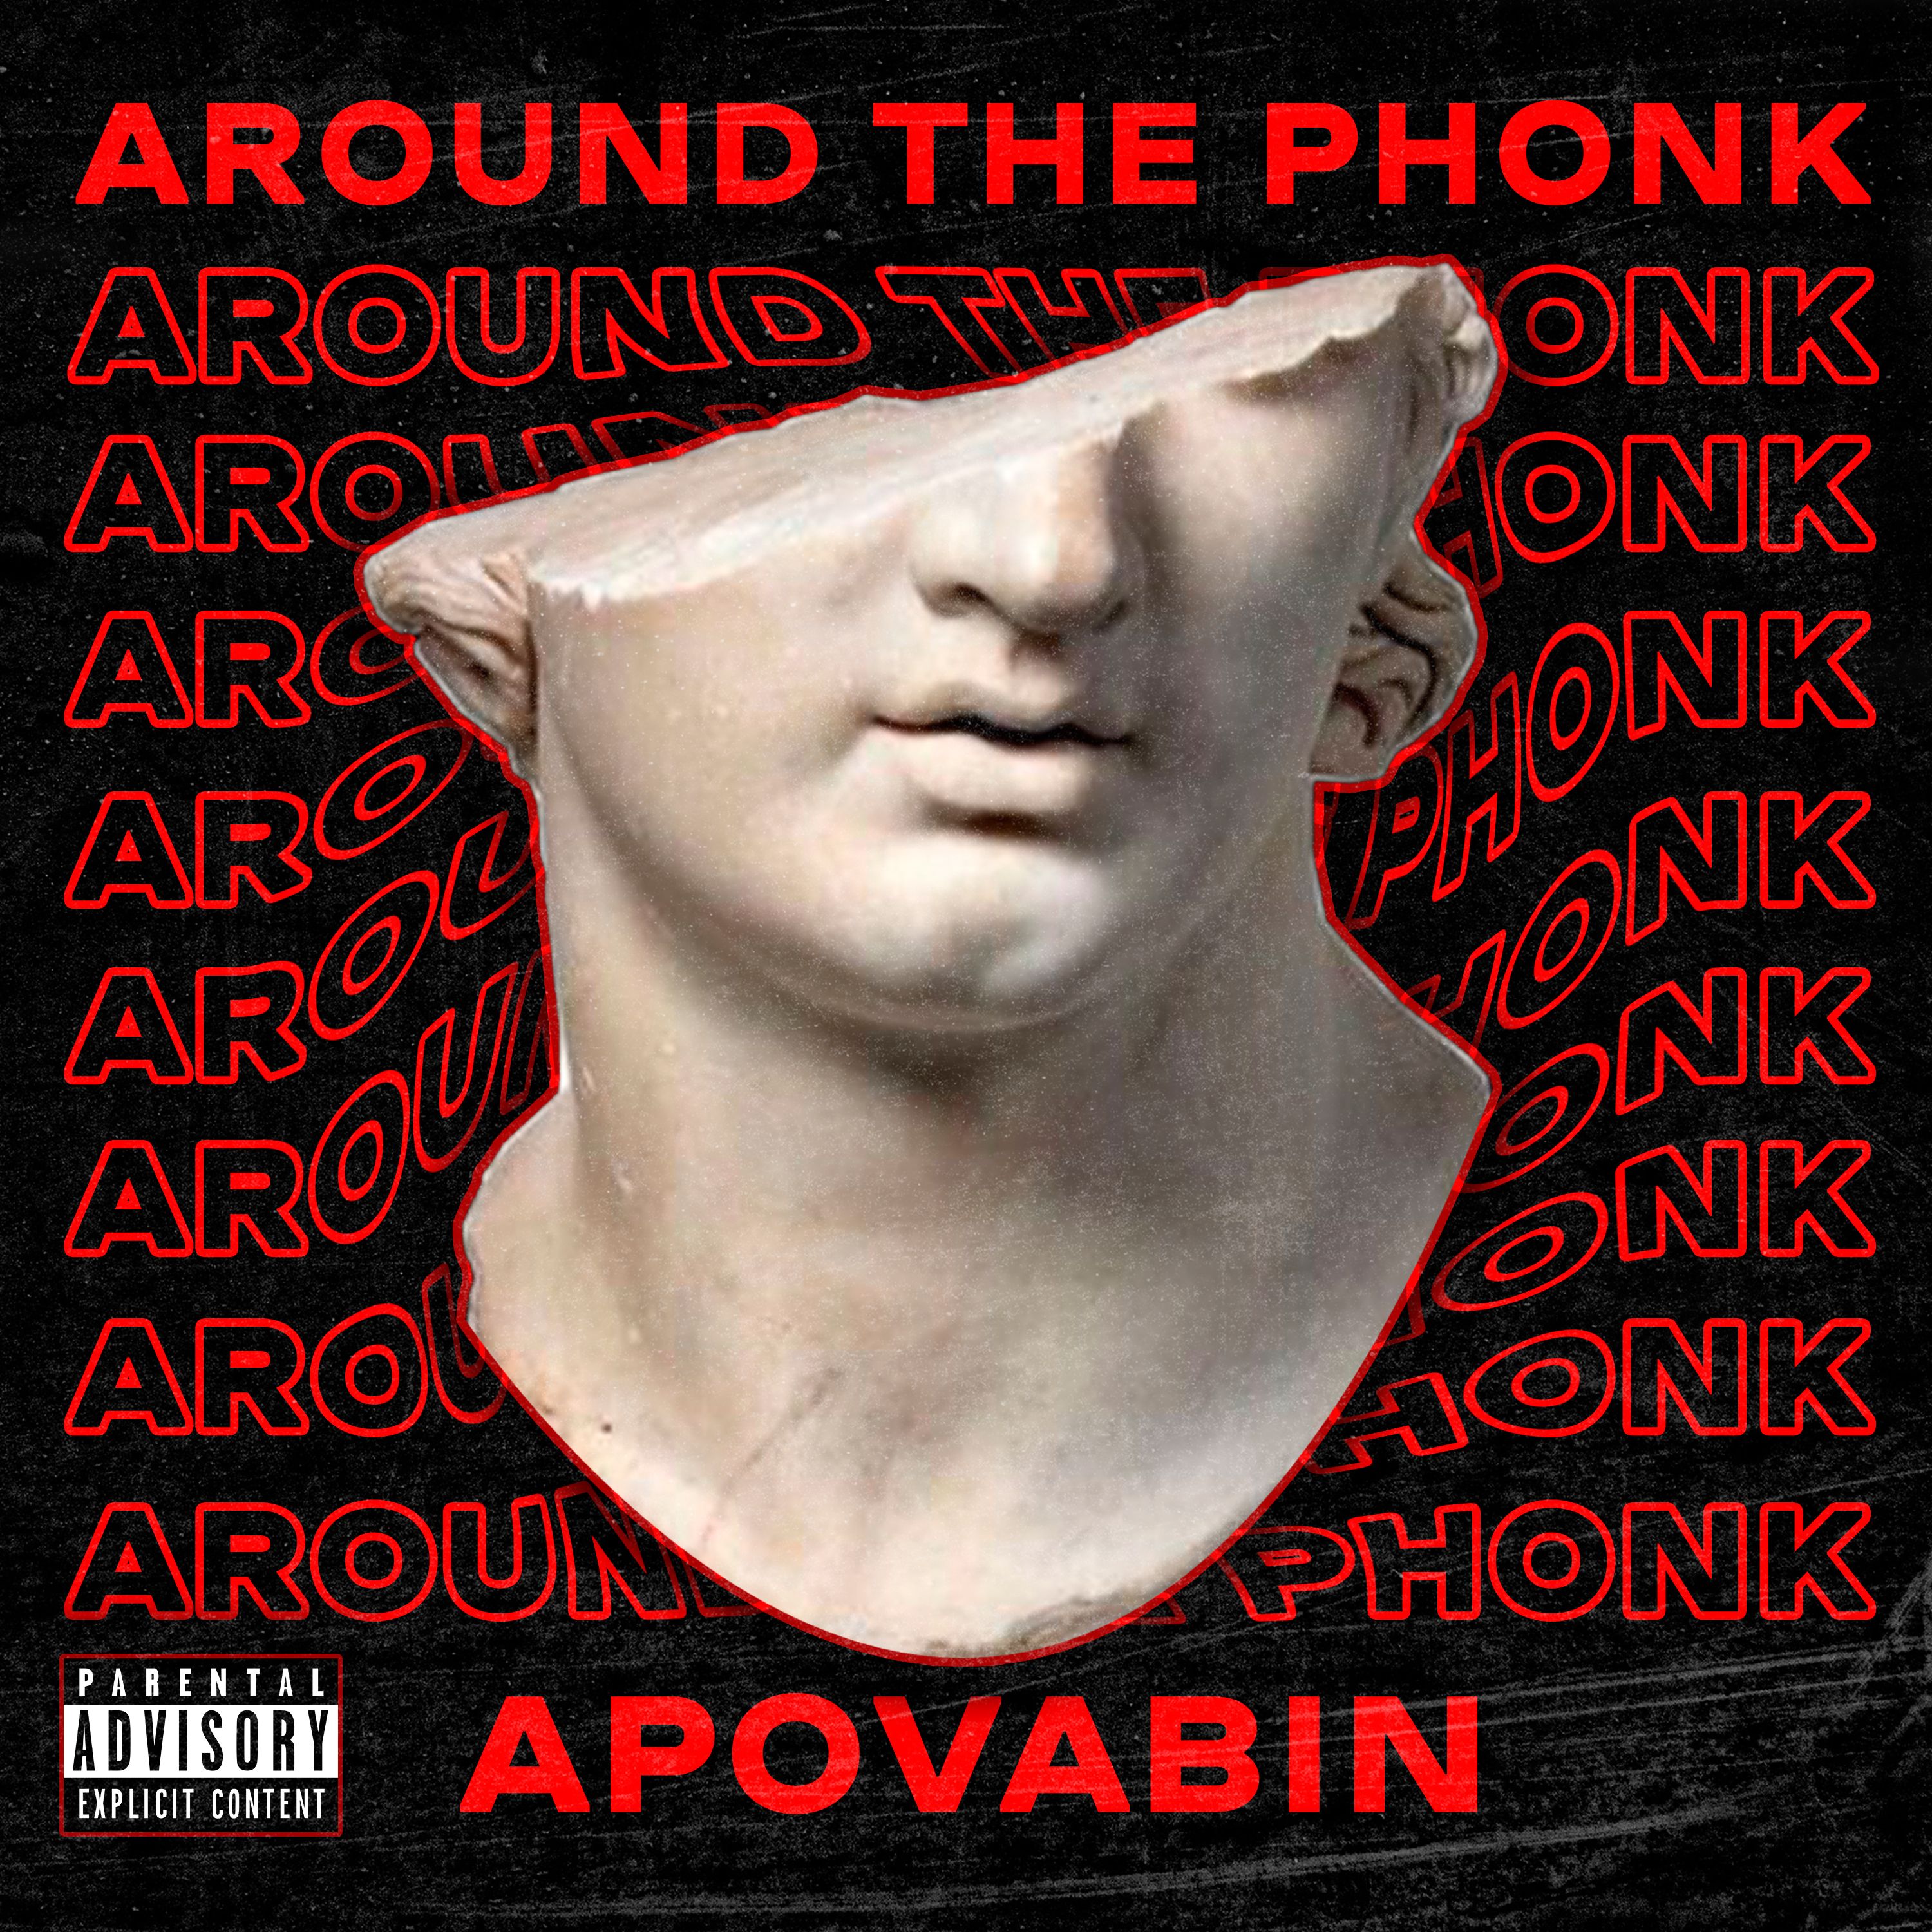 ဒေါင်းလုပ် Apovabin - AROUND THE PHONK